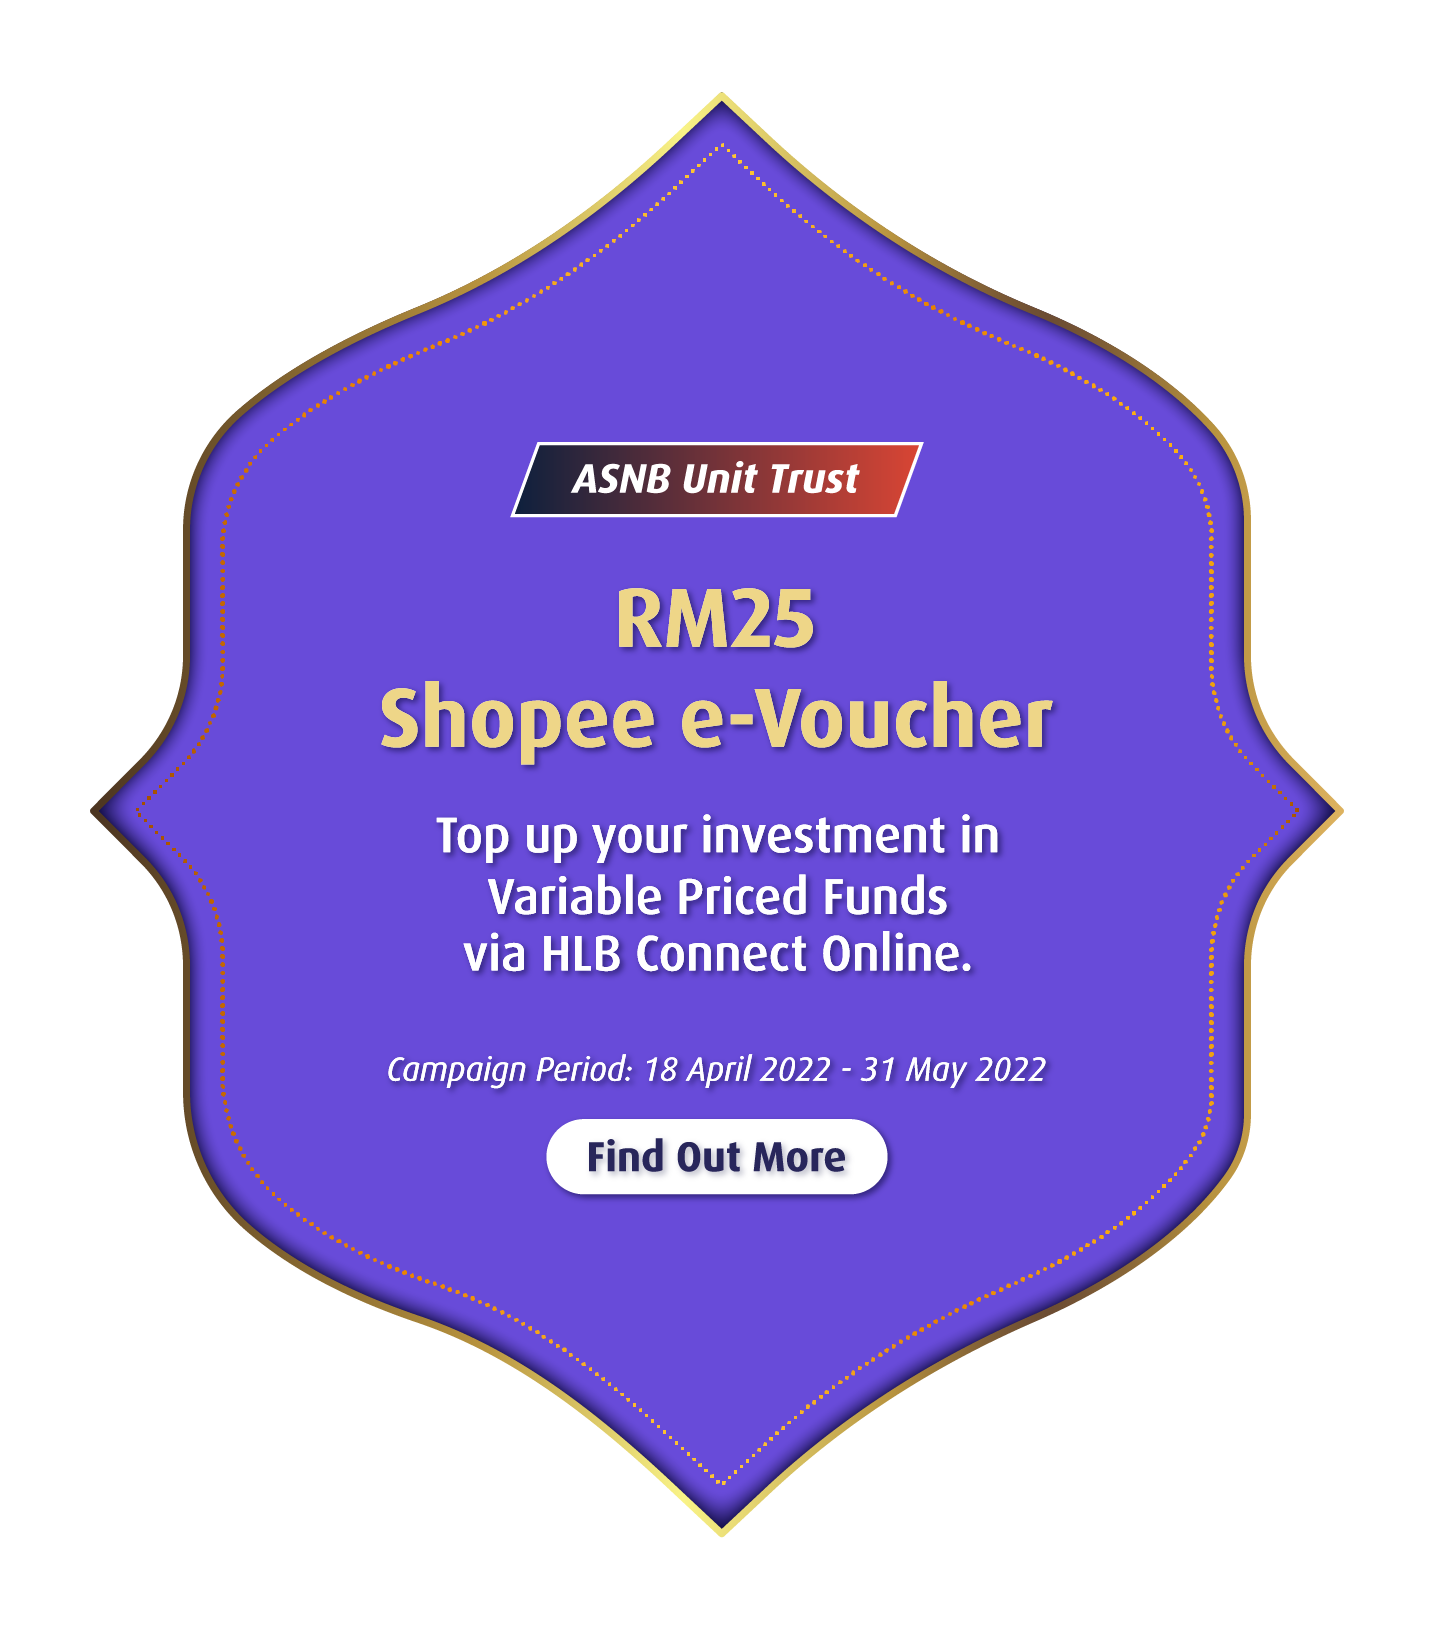 ASNB Unit Trust RM25 Shopee e-Voucher